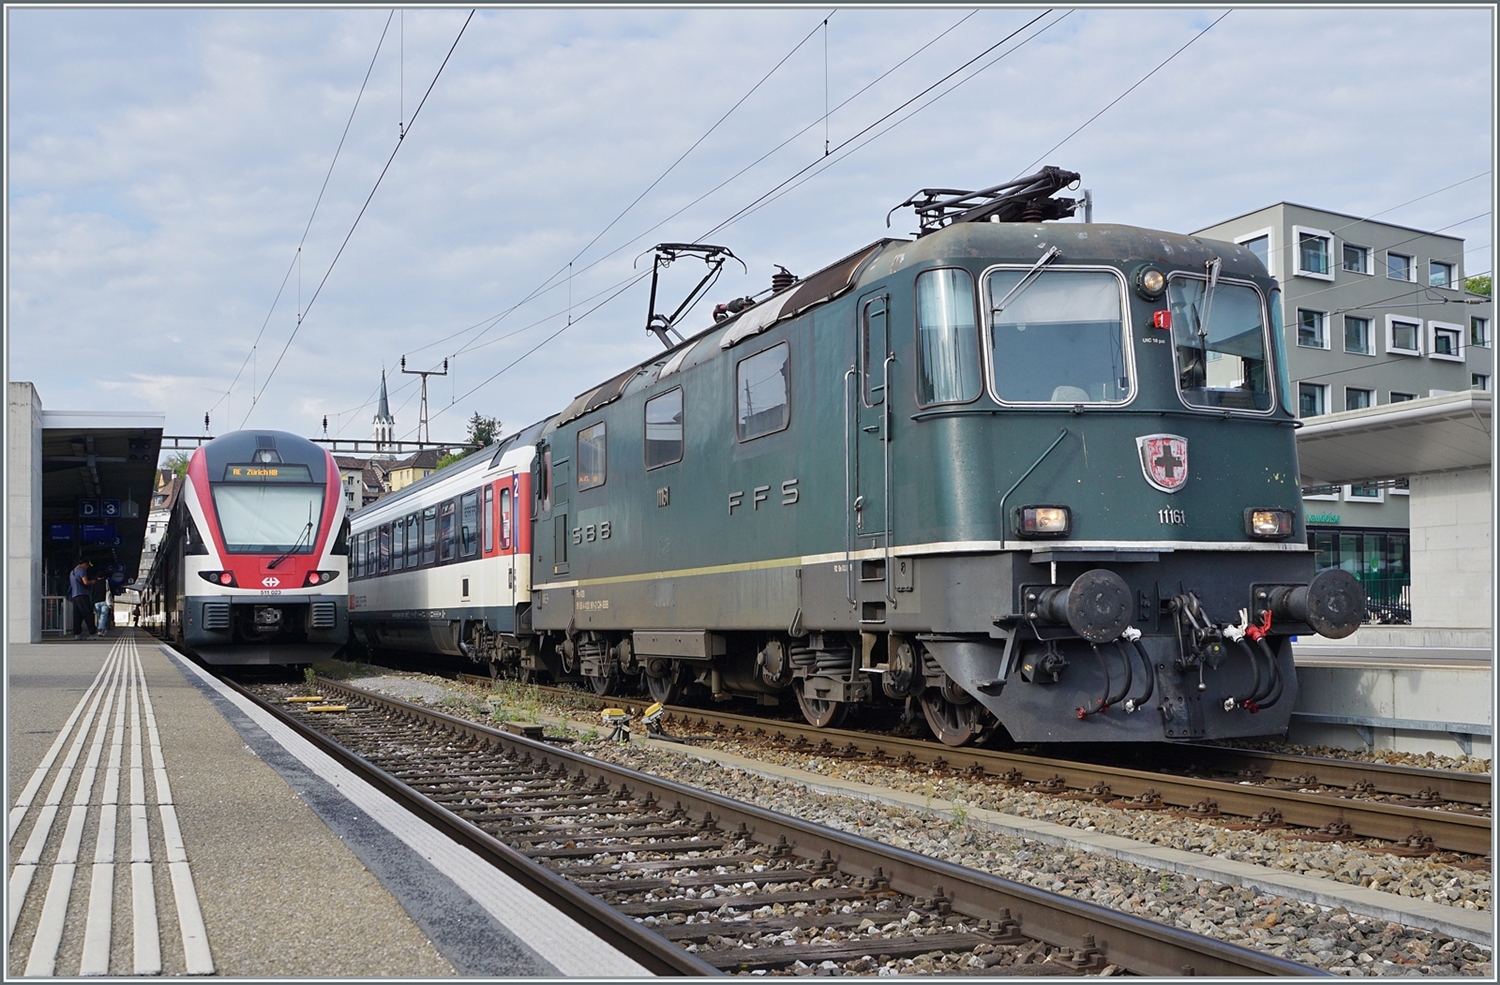 Die SBB Re 4/4 II 11161 wartet in Schaffhausen auf die baldige Weiterfahrt mit ihrem IC nach Singen.  Grün  ist interessanterweise nicht die Originalfarbgebung der Lok, die Re 4/4 II 11161 kam im edlen TEE Anstrich zur SBB. 

6. September 2022